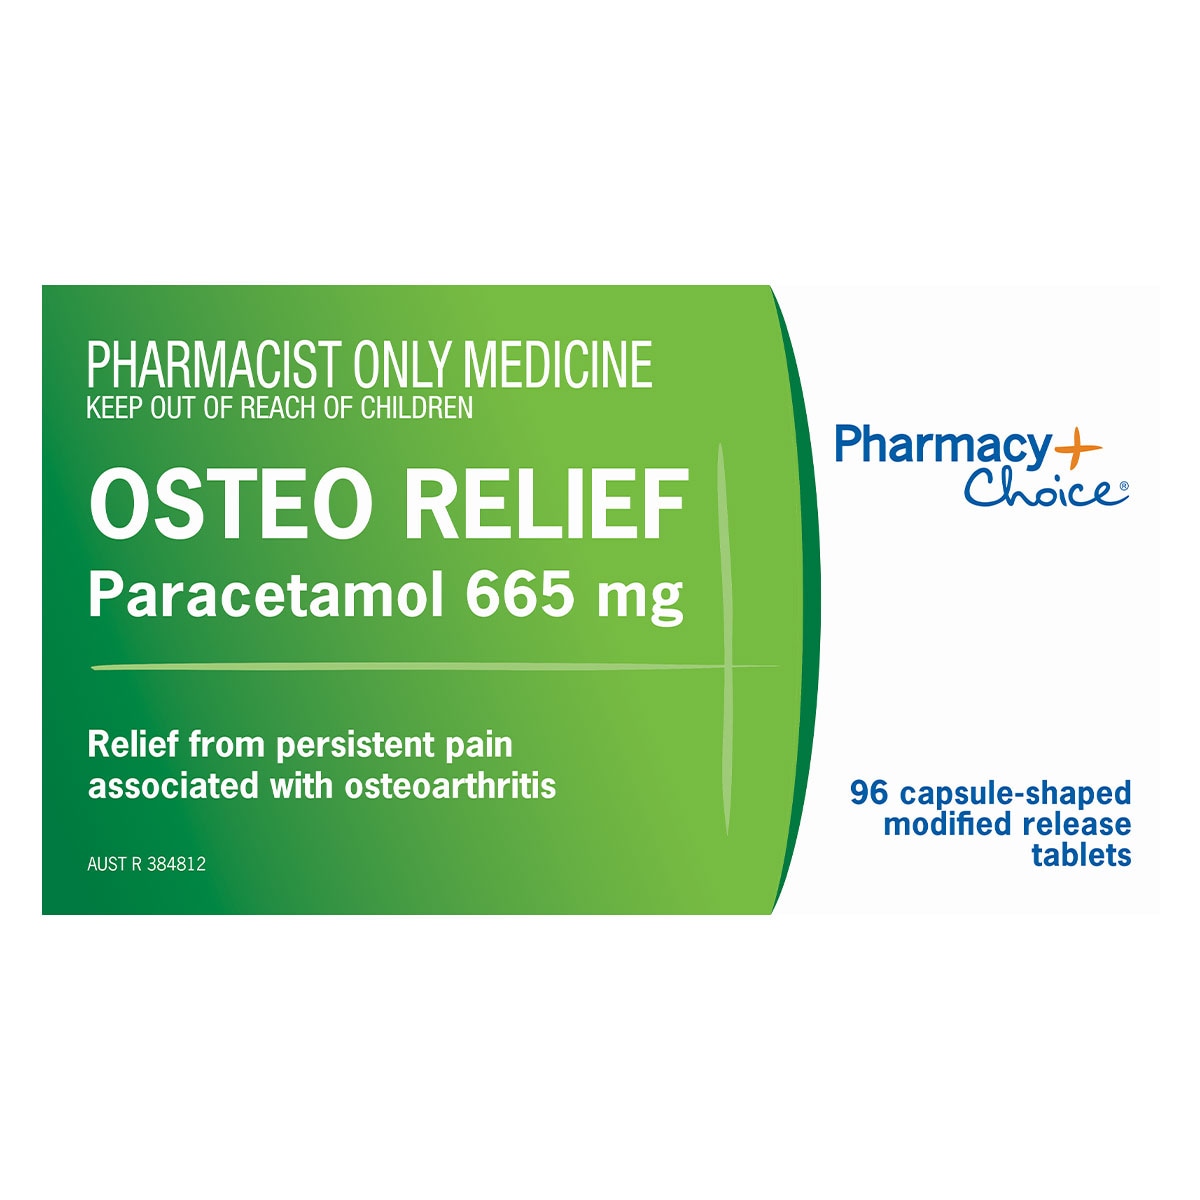 Pharmacy Choice Osteo Relief Paracetamol (665mg) 96 Caplets